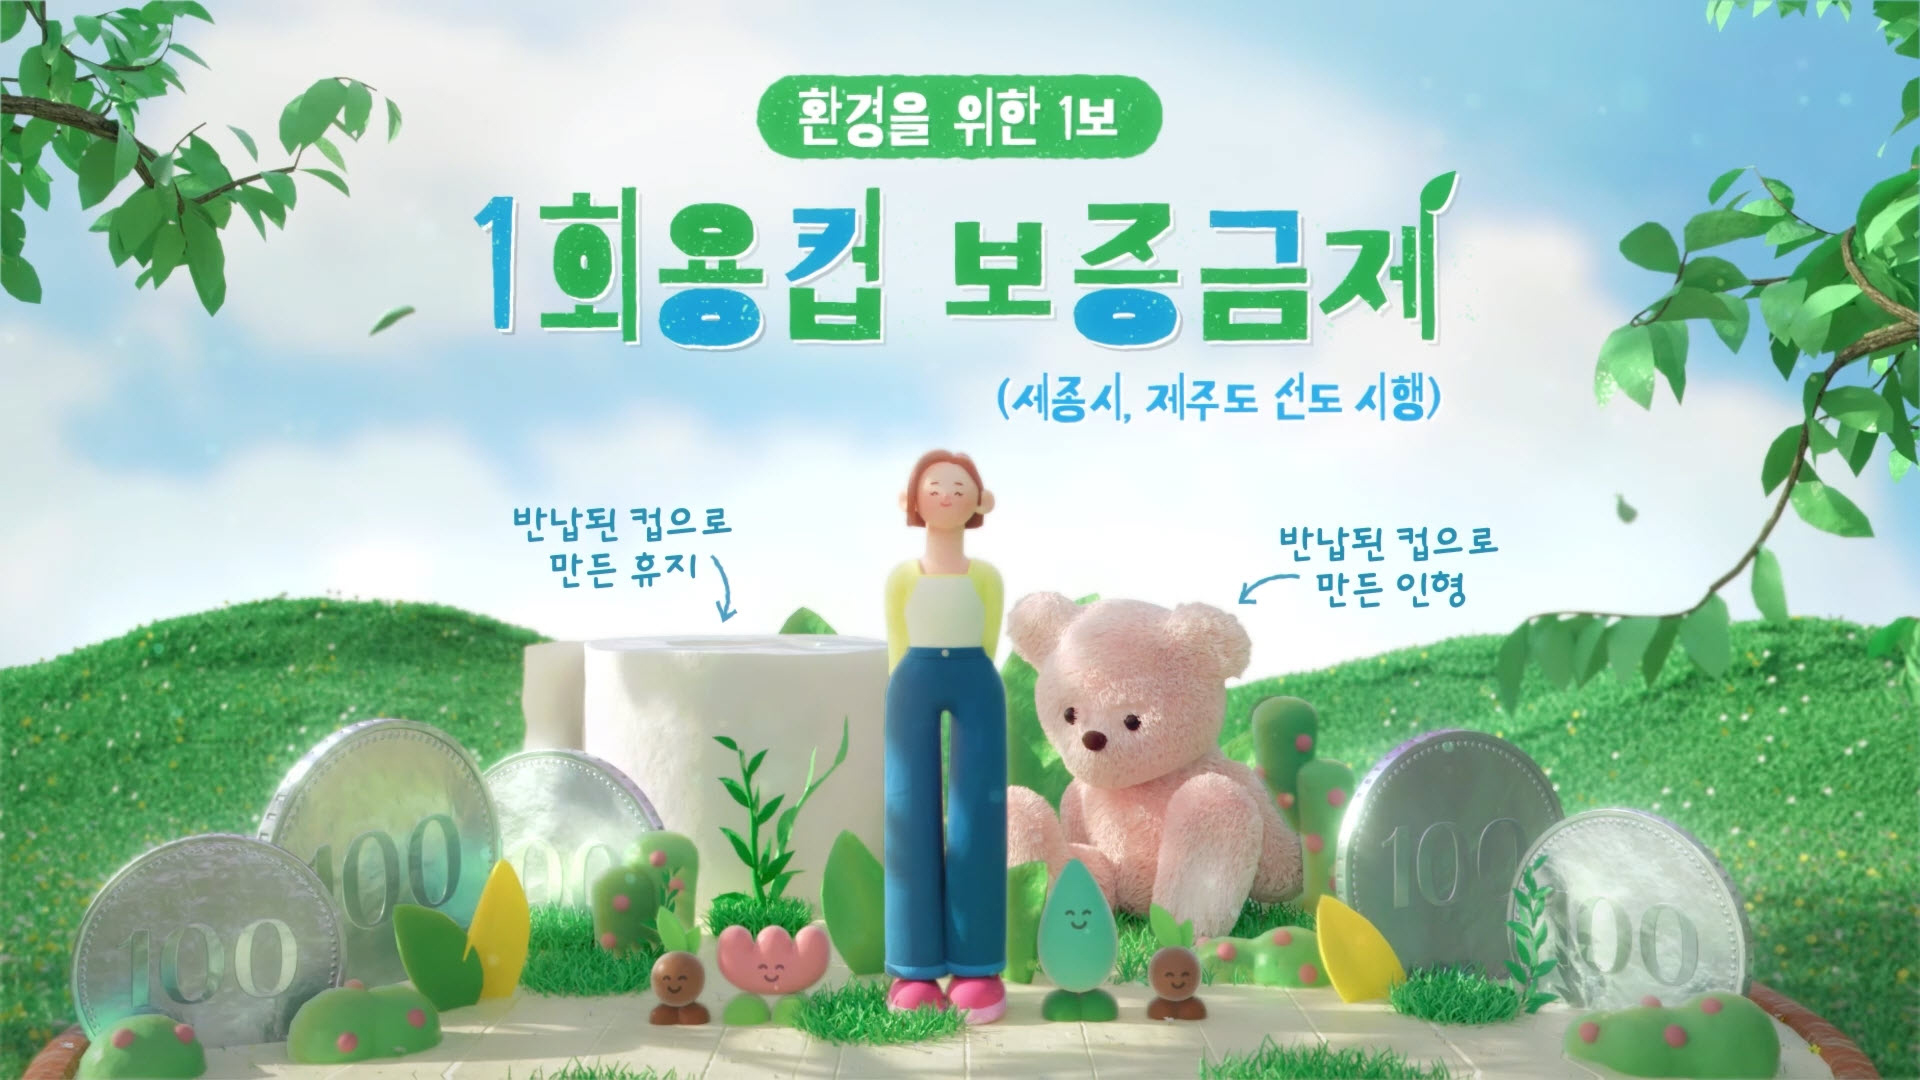 일회용컵 보증금제 홍보 애니메이션 이미지